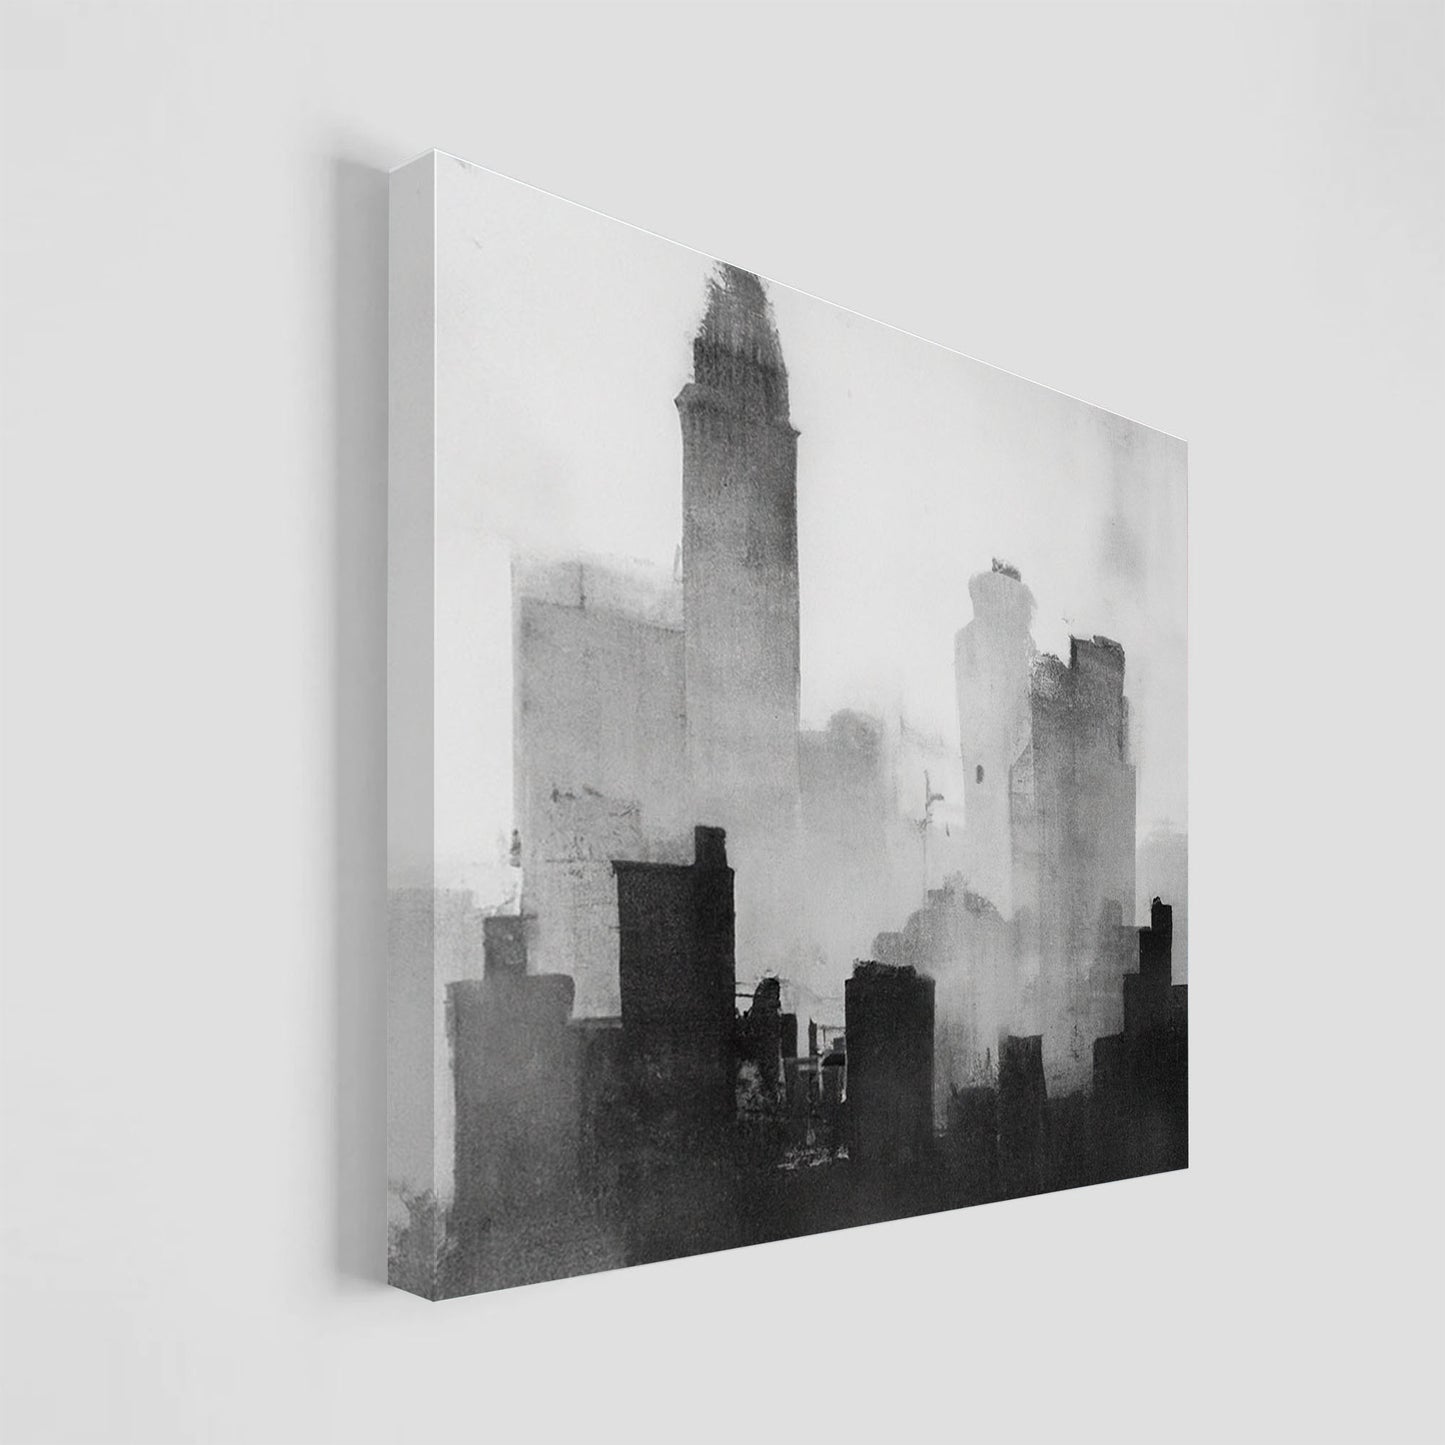 Ilustración en blanco y negro de una ciudad envuelta en niebla, con siluetas de rascacielos y edificios.